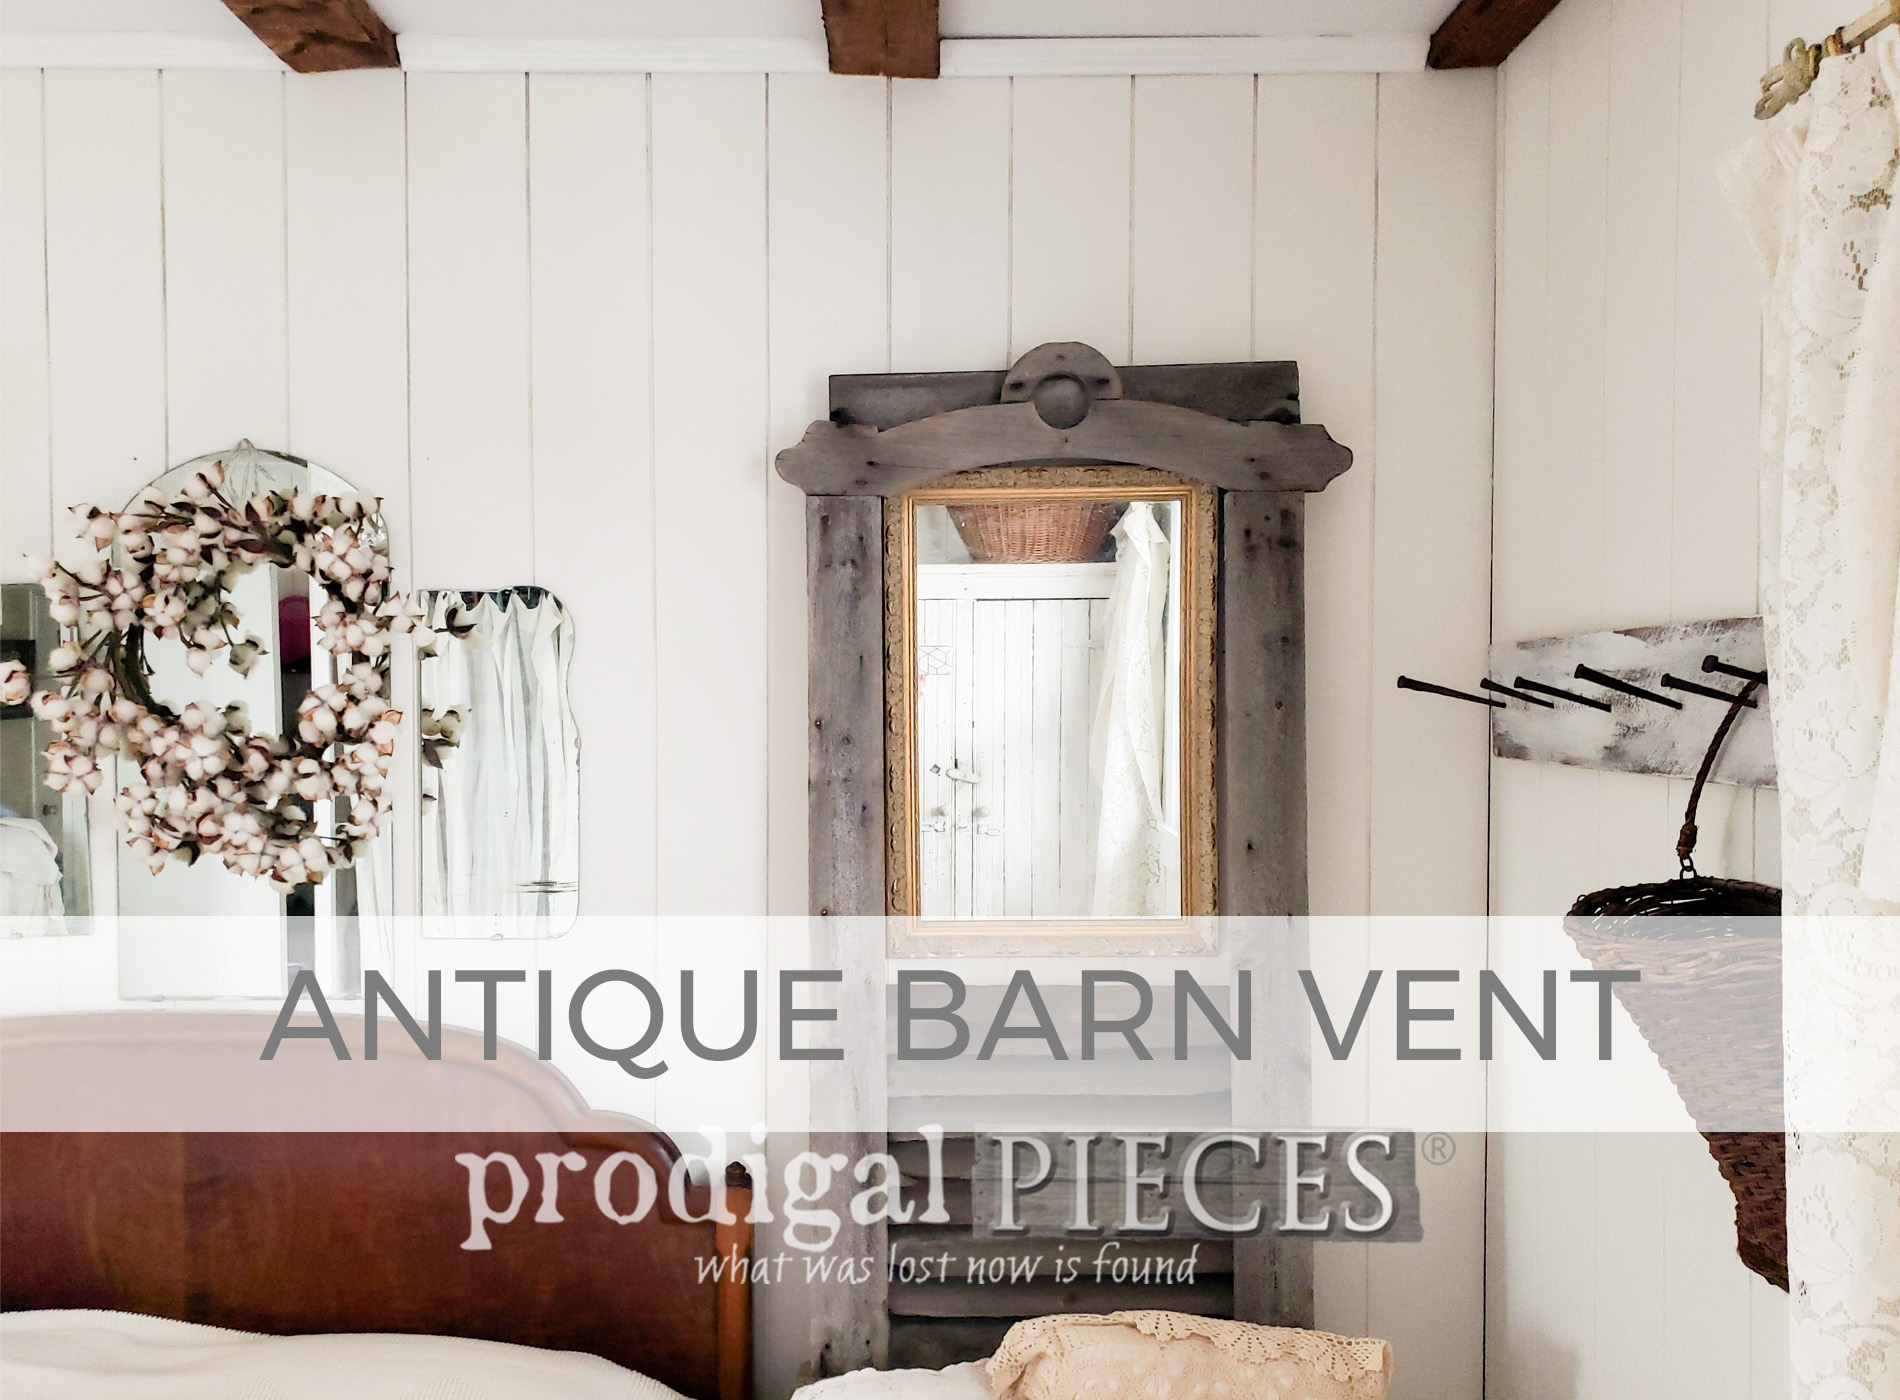 Antique Barn Vent as Home Decor by Prodigal Pieces | prodigalpieces.com